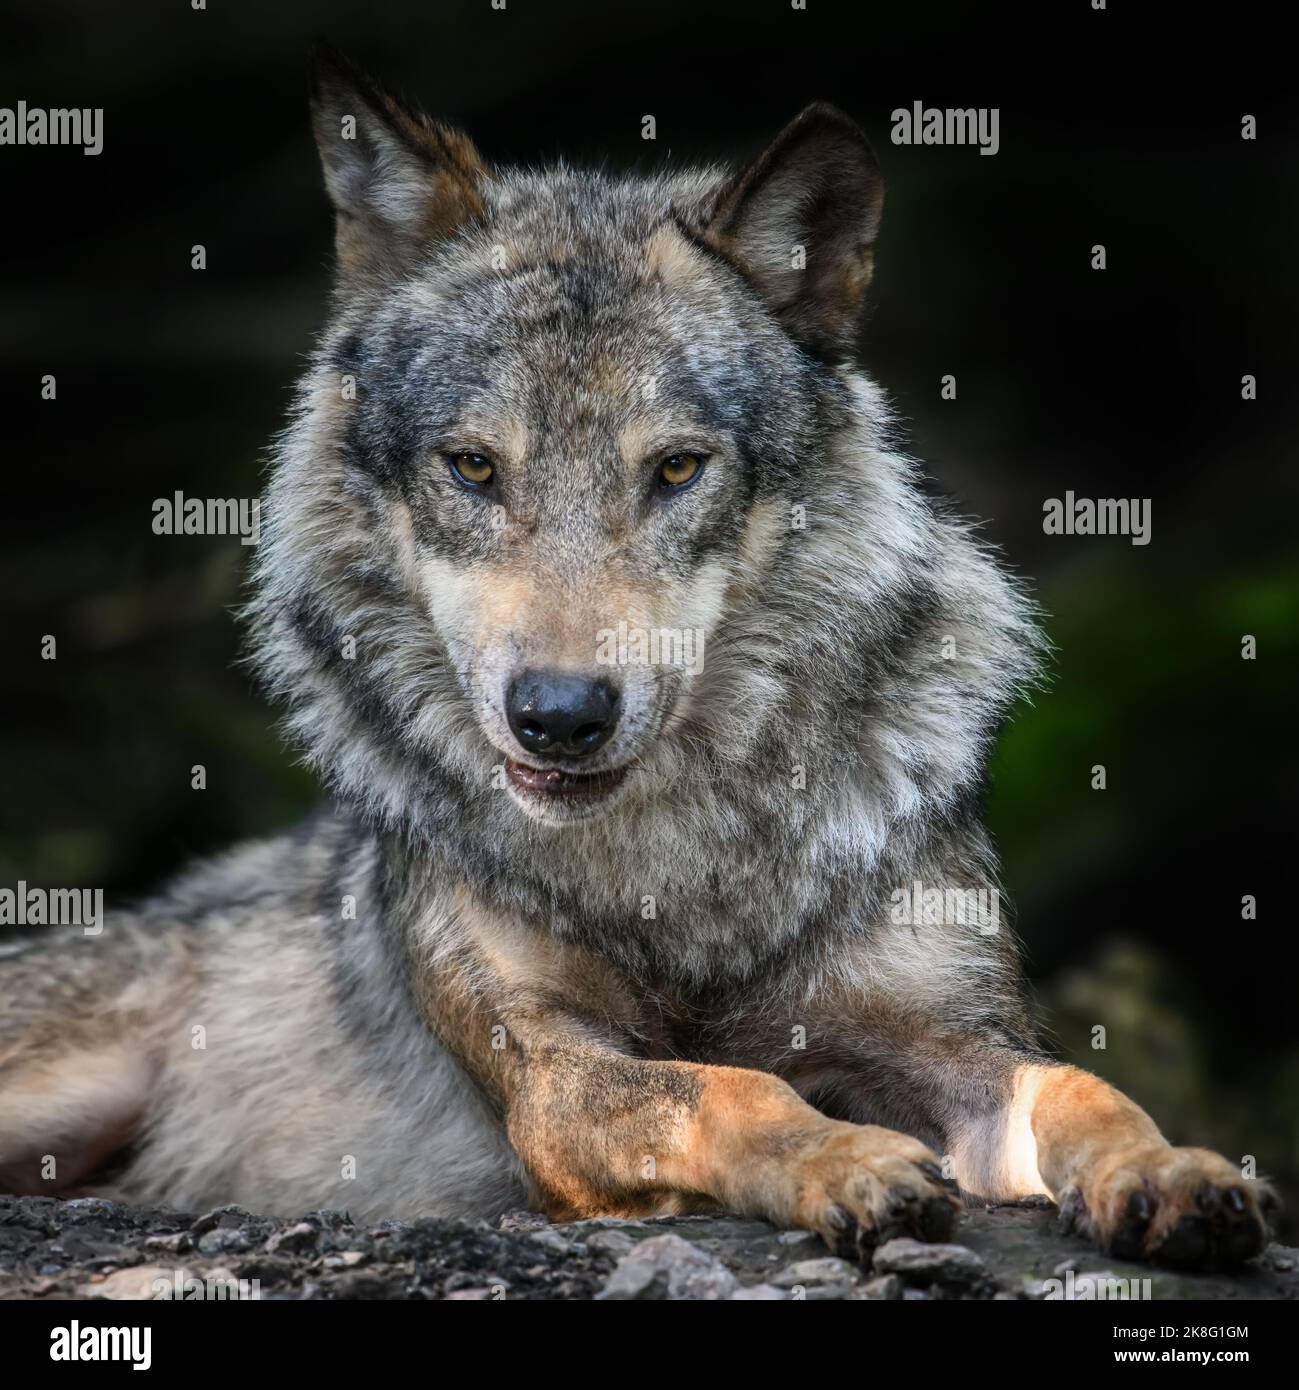 Loup en forêt. Scène sauvage de la nature. Animal sauvage dans l'habitat naturel Banque D'Images